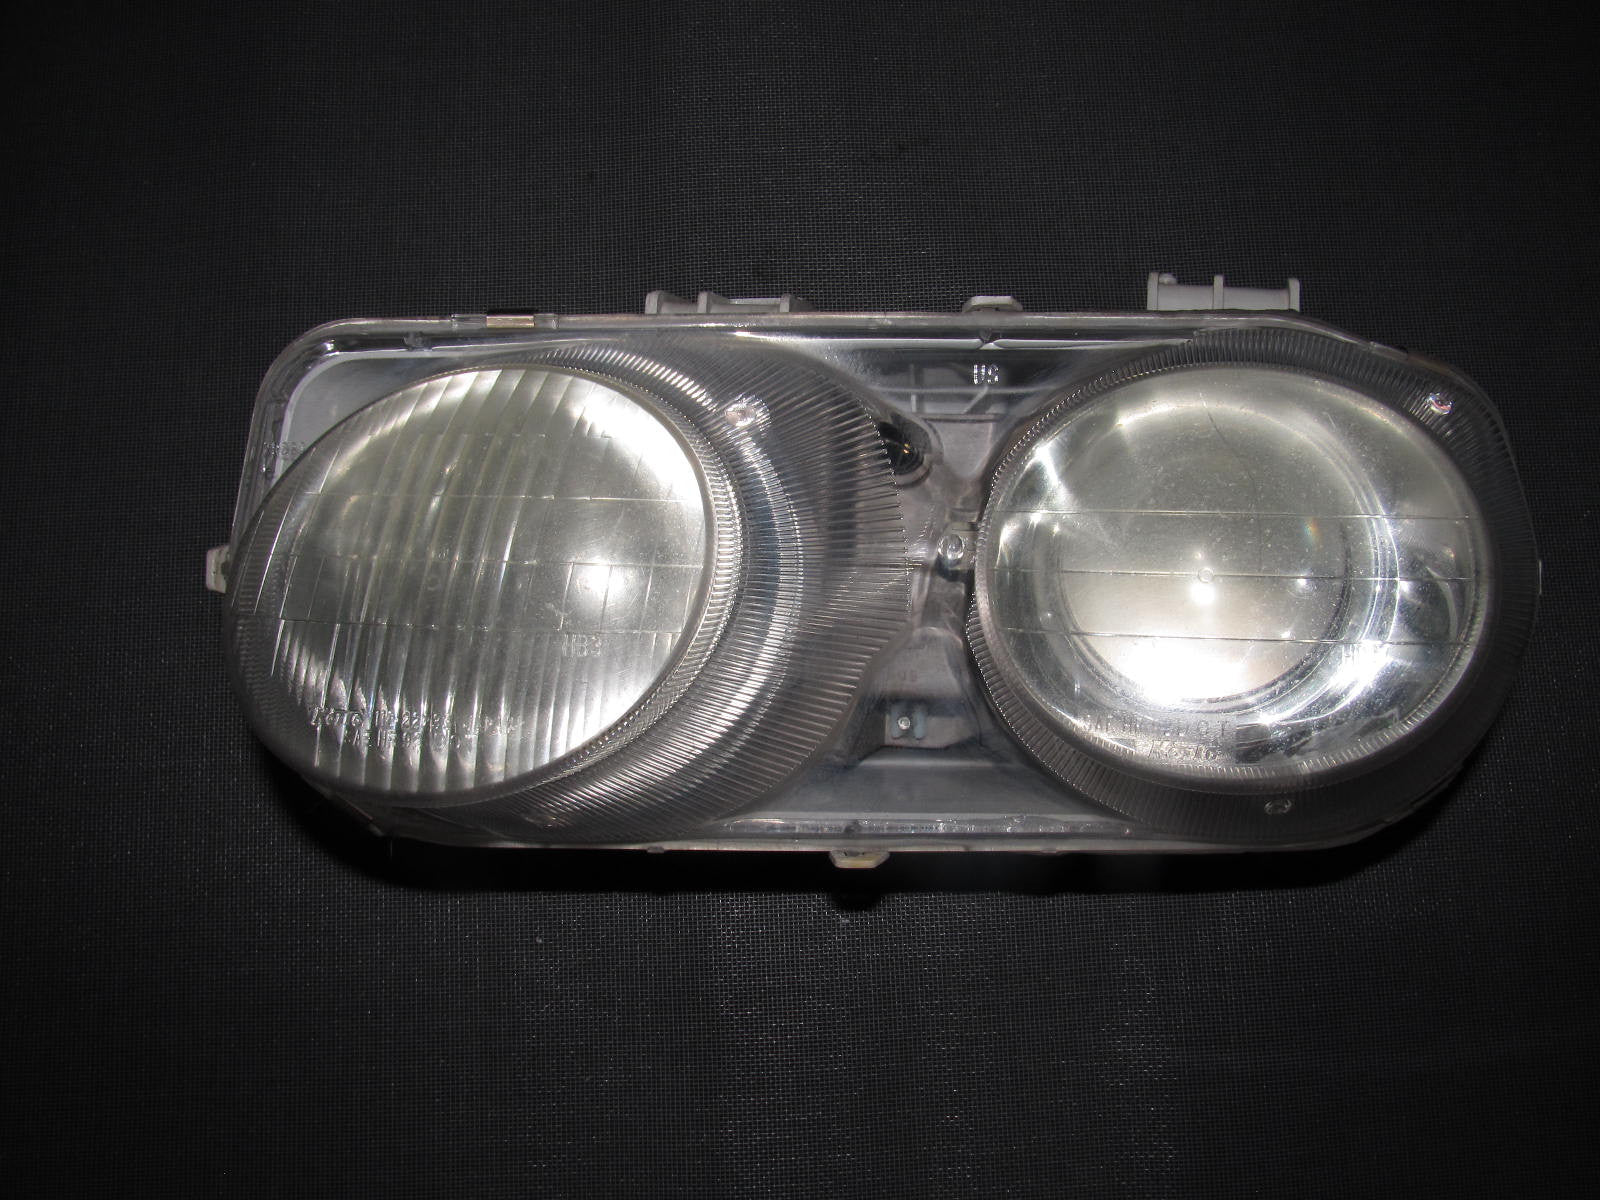 94-97 Acura Integra OEM Headlight - Driver Side - Left